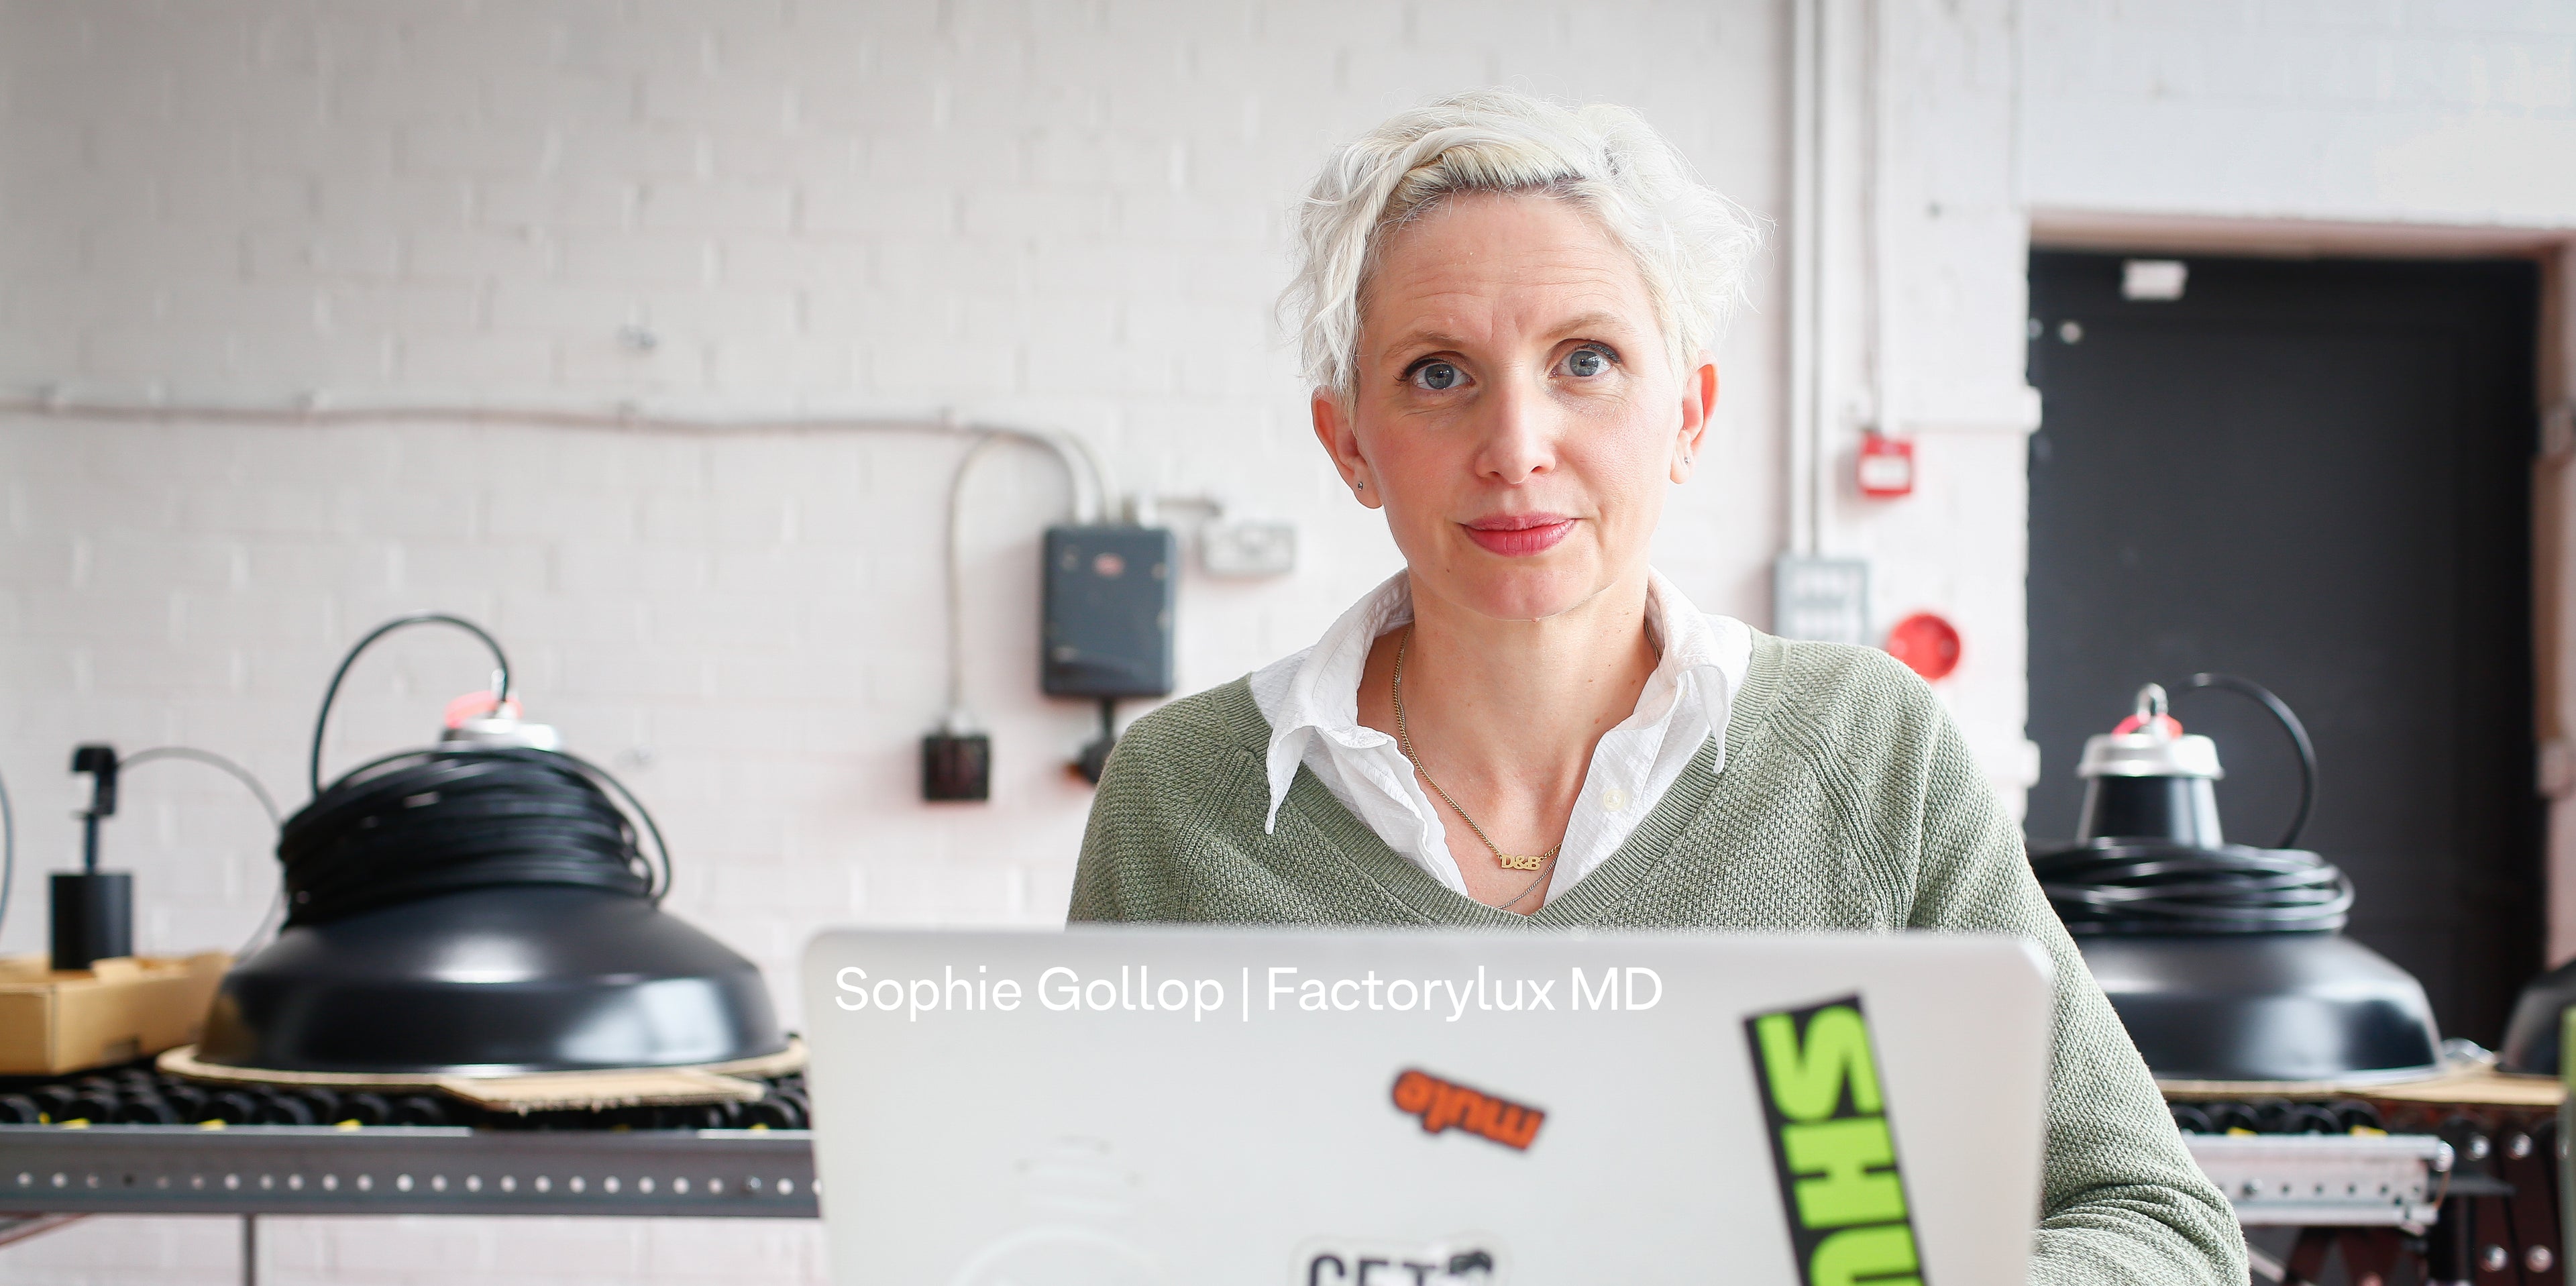 Factorylux MD Sophie Gollop at work at HQ among matte black Reflekter pendants